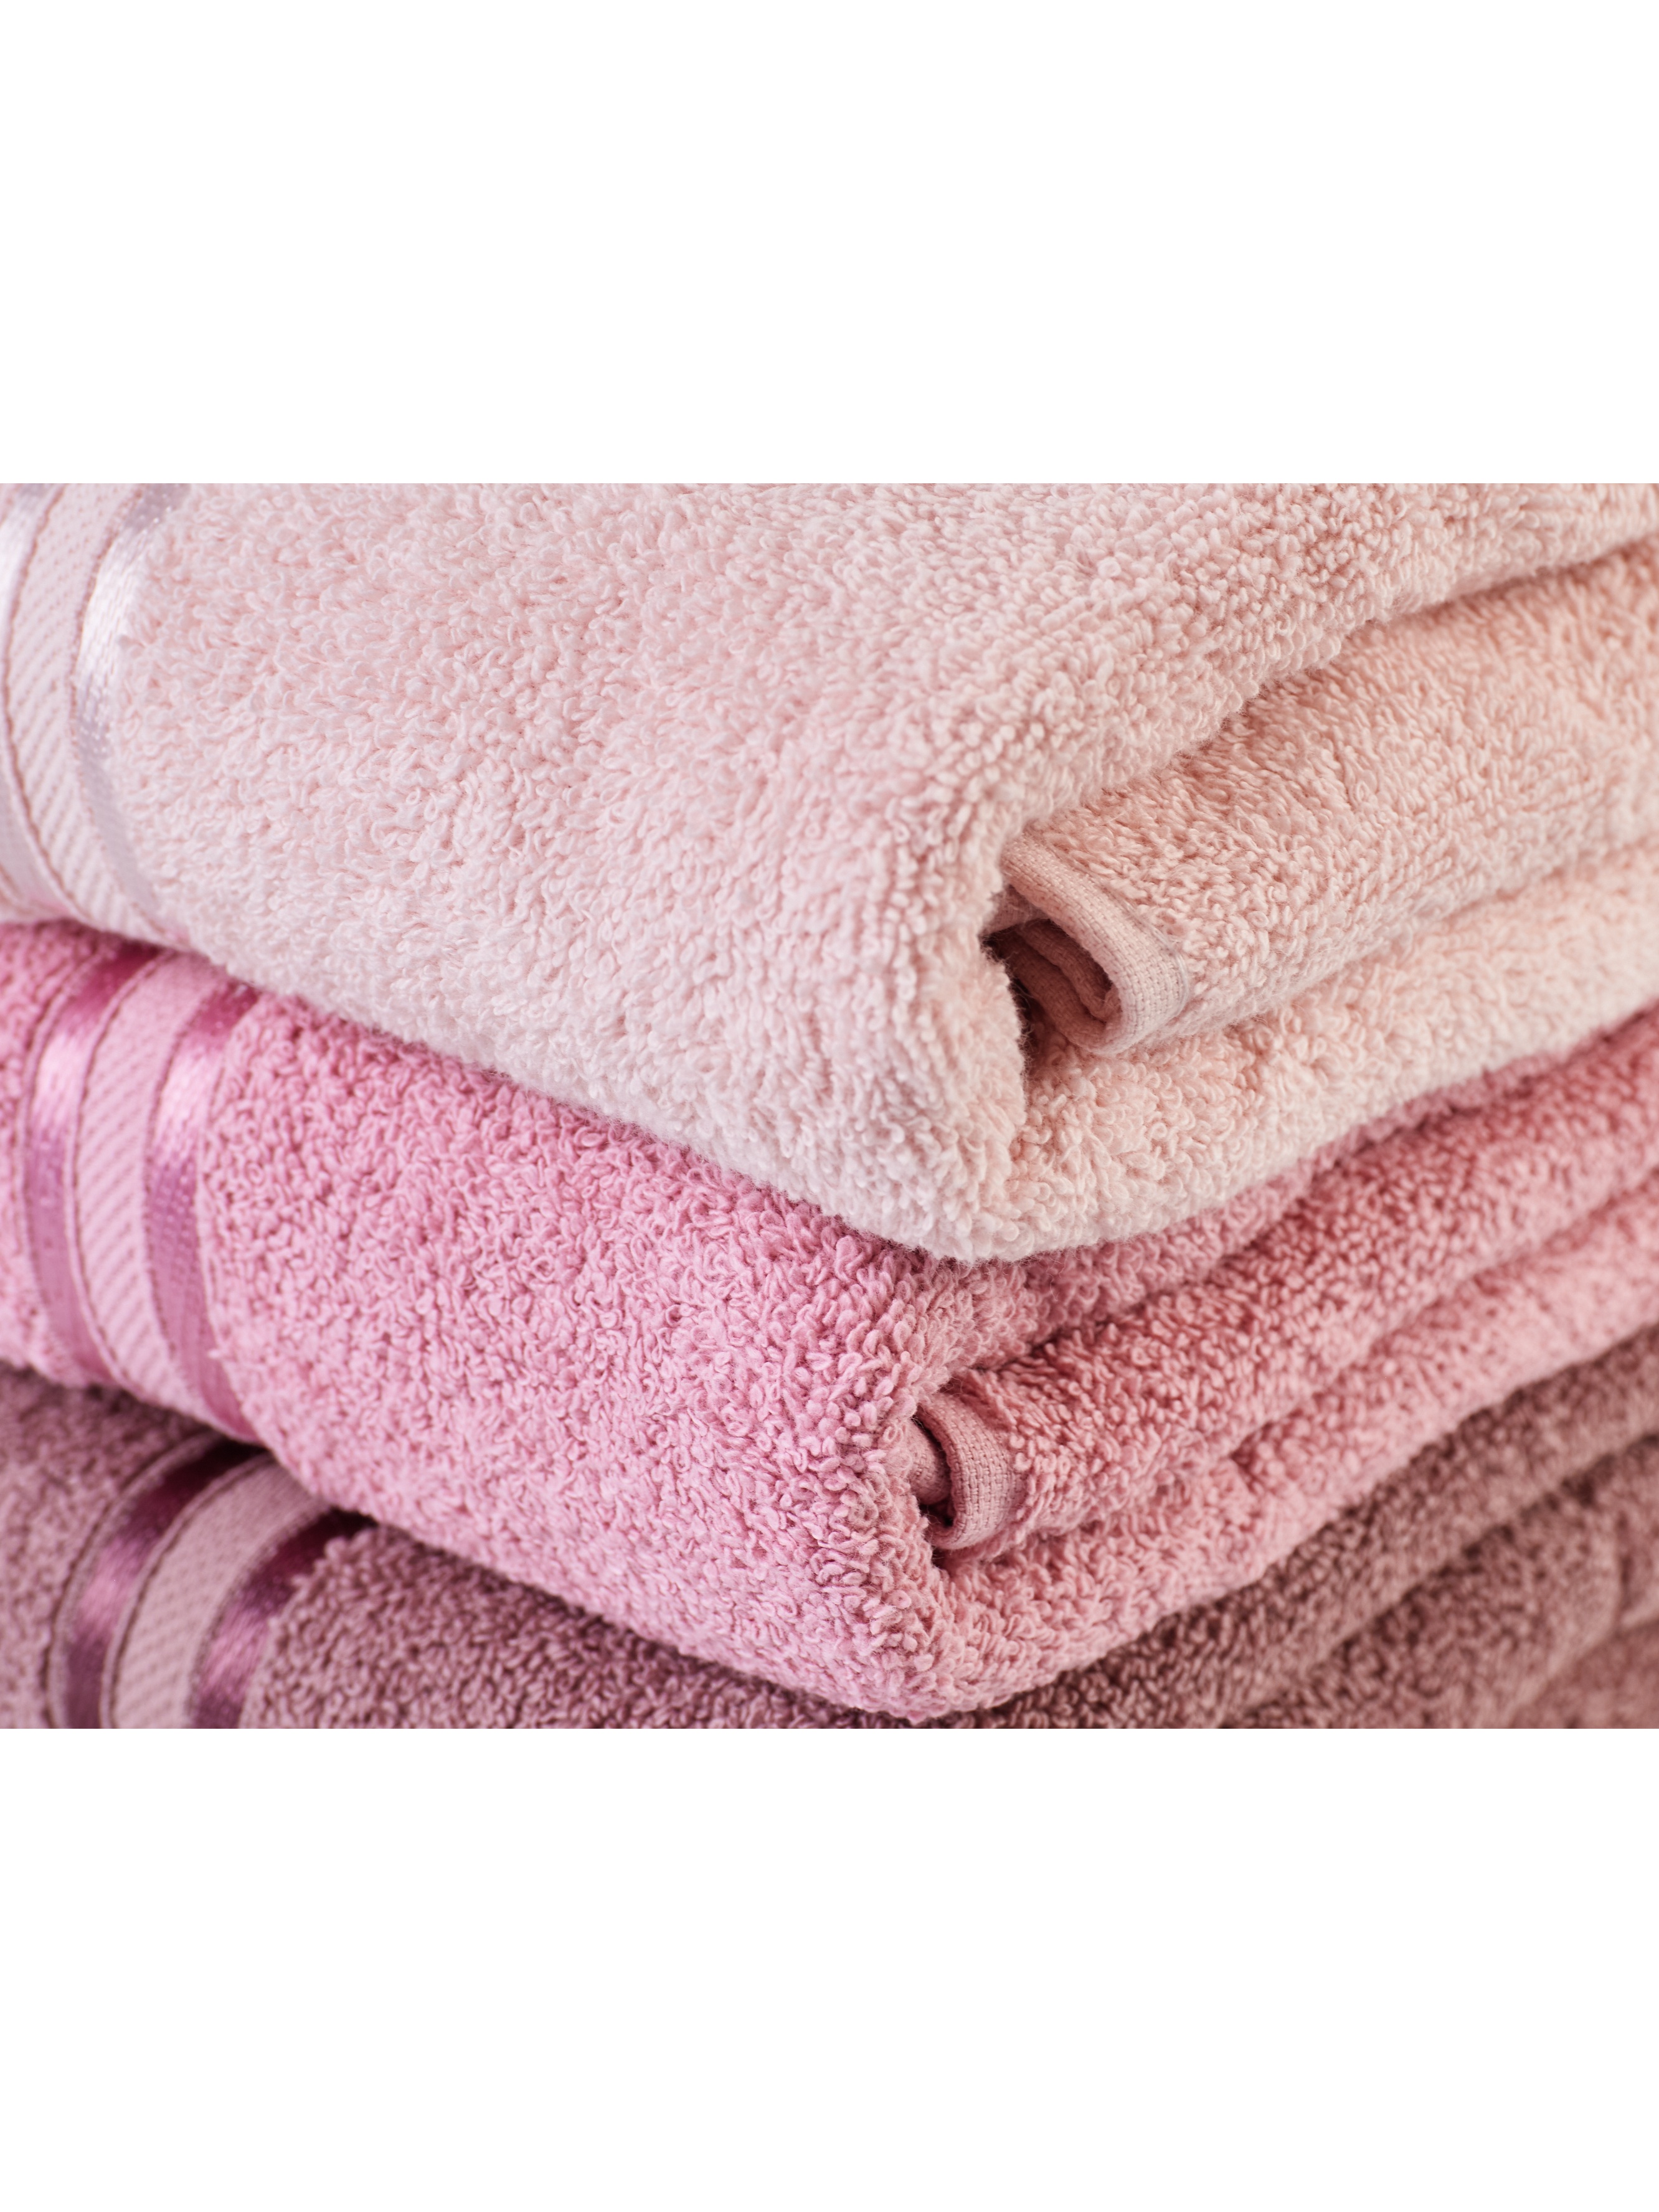 Набор полотенец 3 шт 70х140 см ATLASPLUS коричневый пудровый бледно-розовый - фото 6